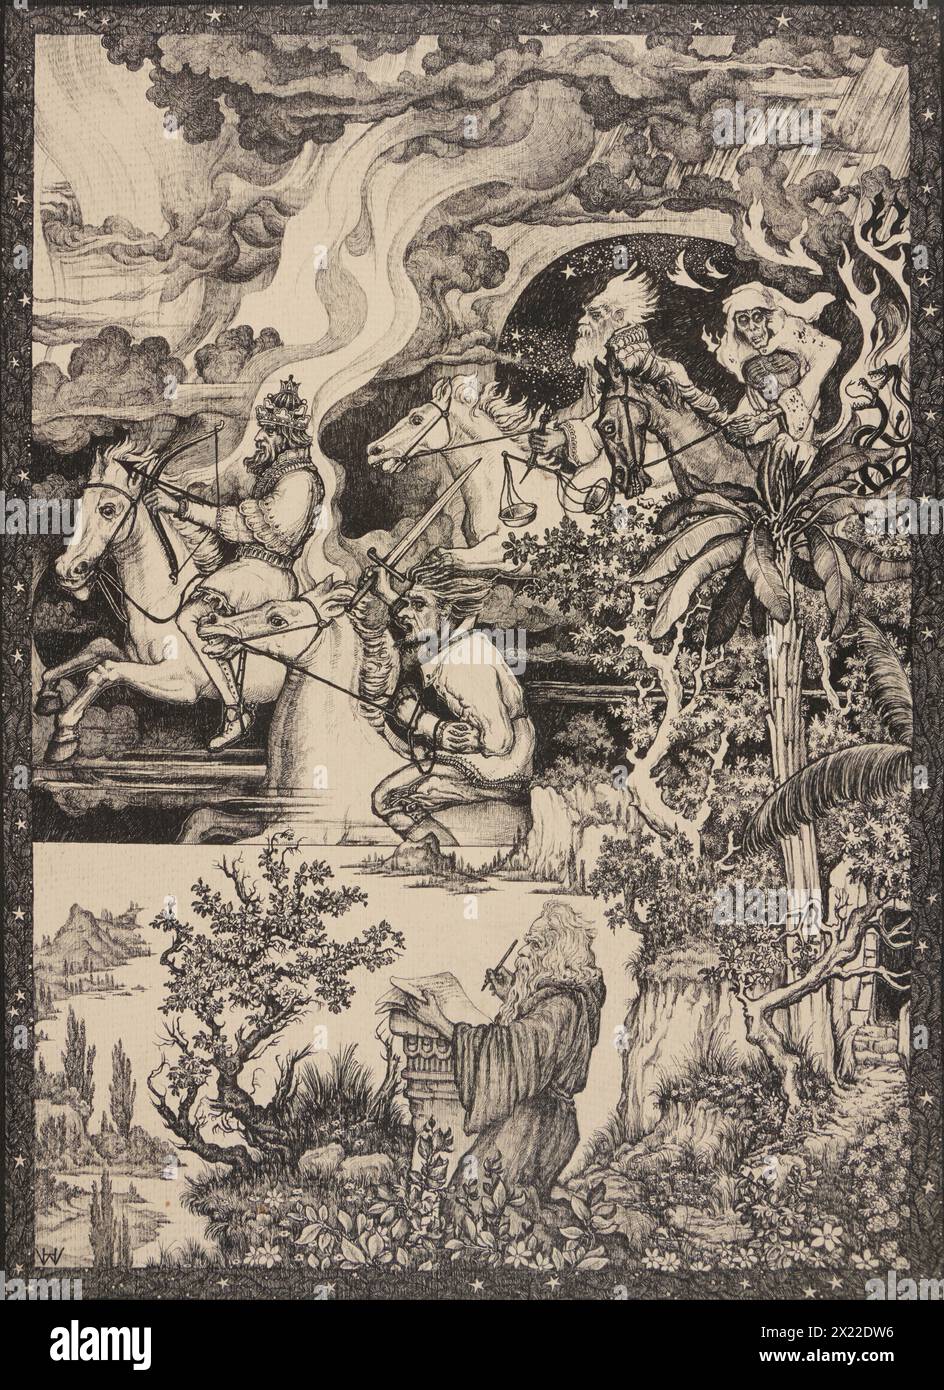 The Four Horsemen Of The Apocalypse, c1915-35. Stock Photo